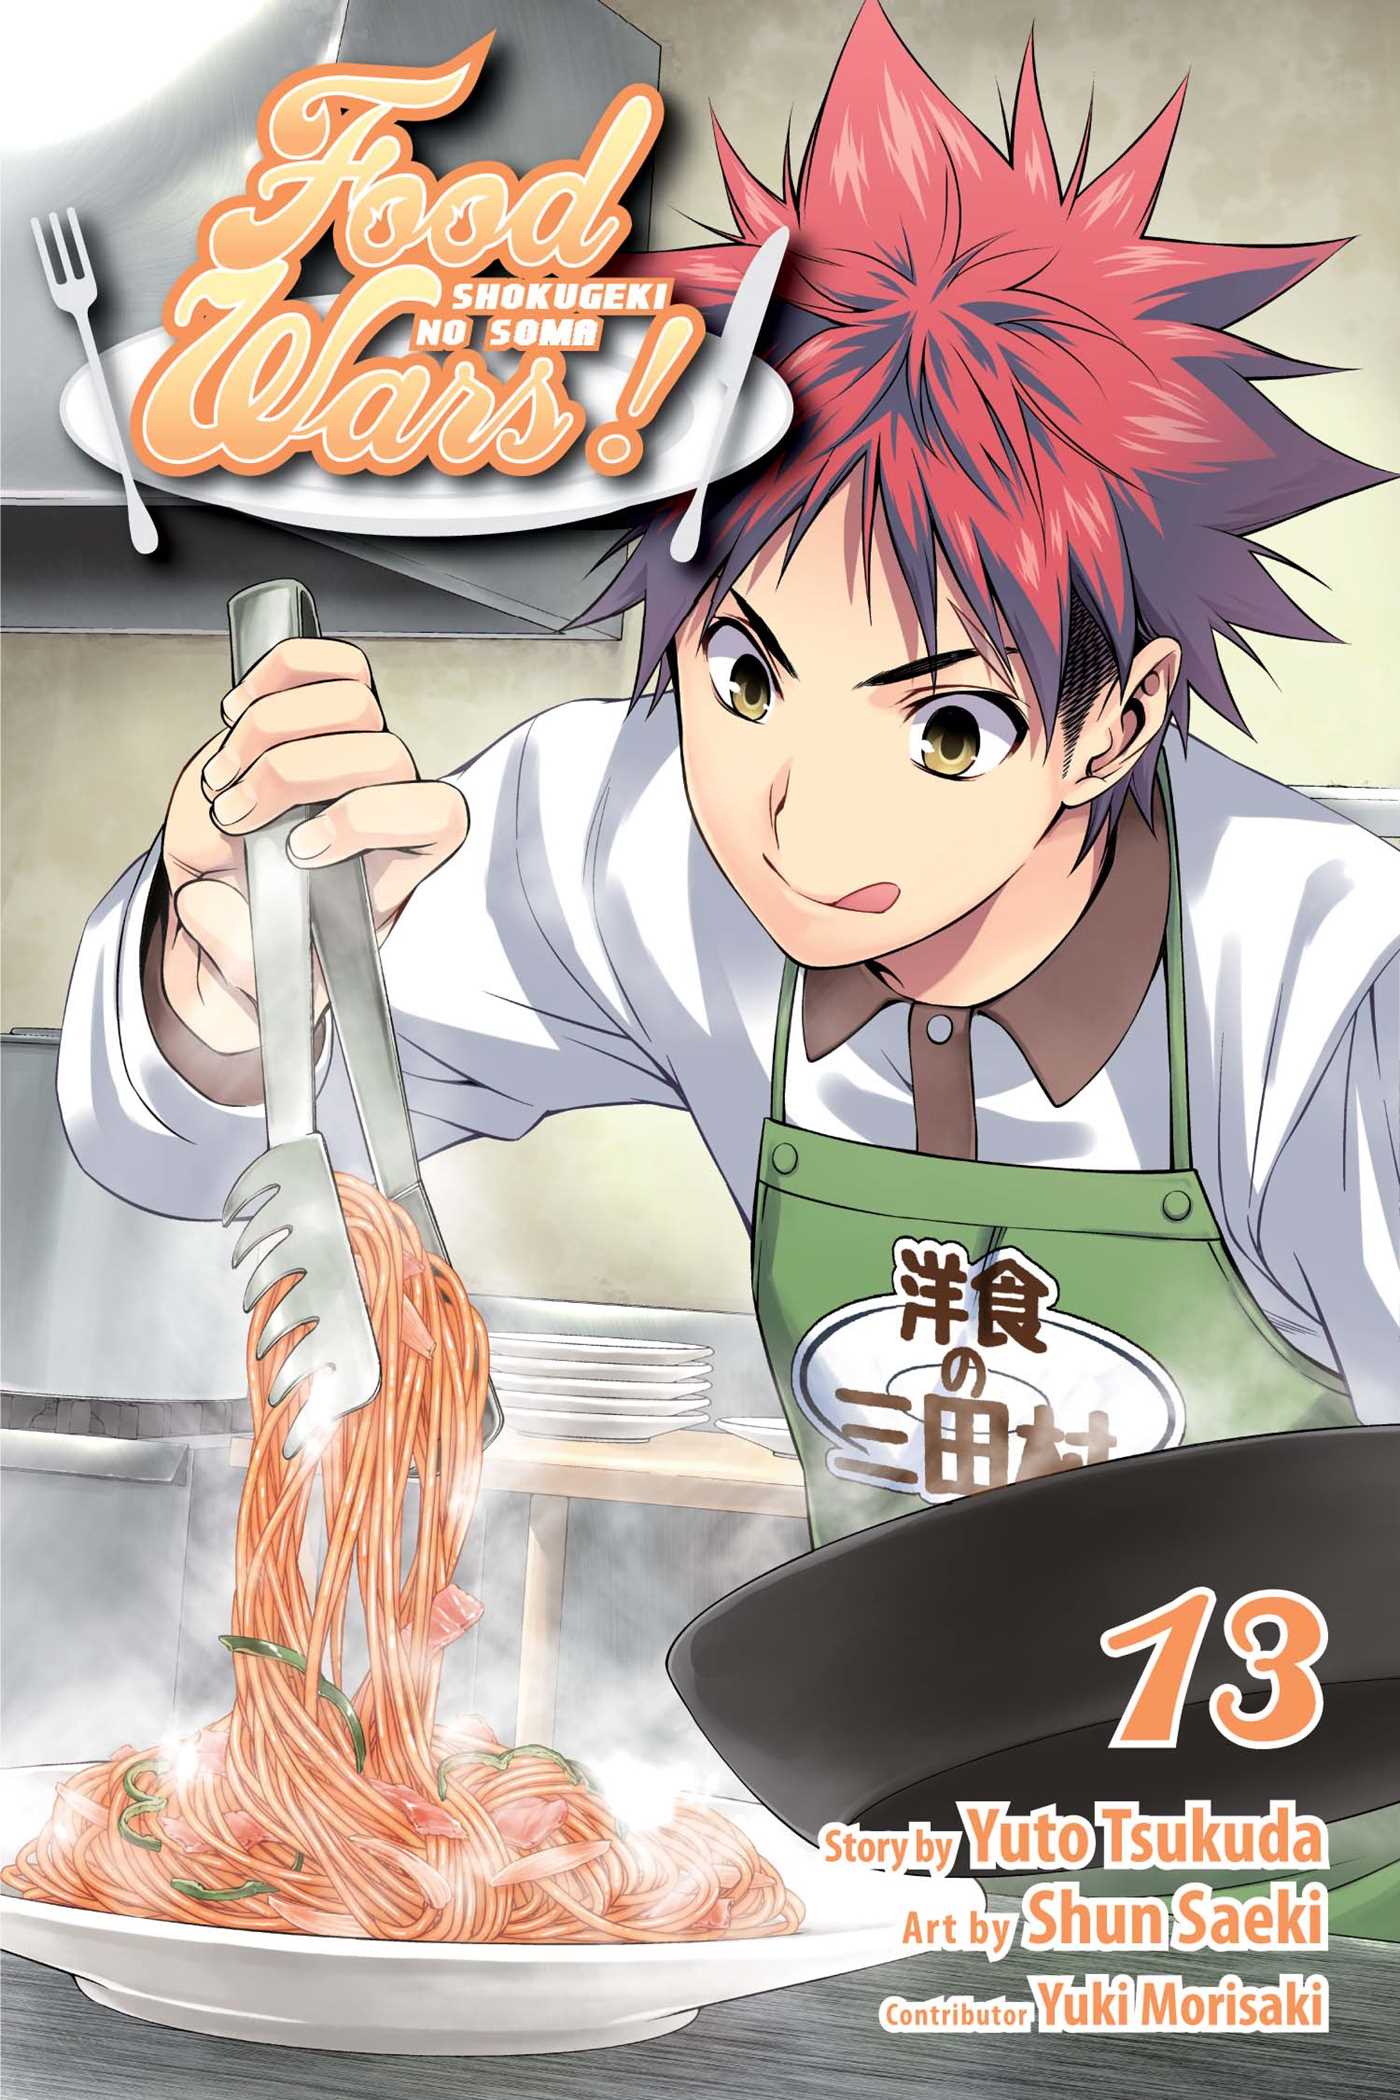 Food Wars!: Shokugeki no Soma Vol. 13 | Tsukuda, Yuto (Auteur) | Saeki, Shun (Illustrateur)